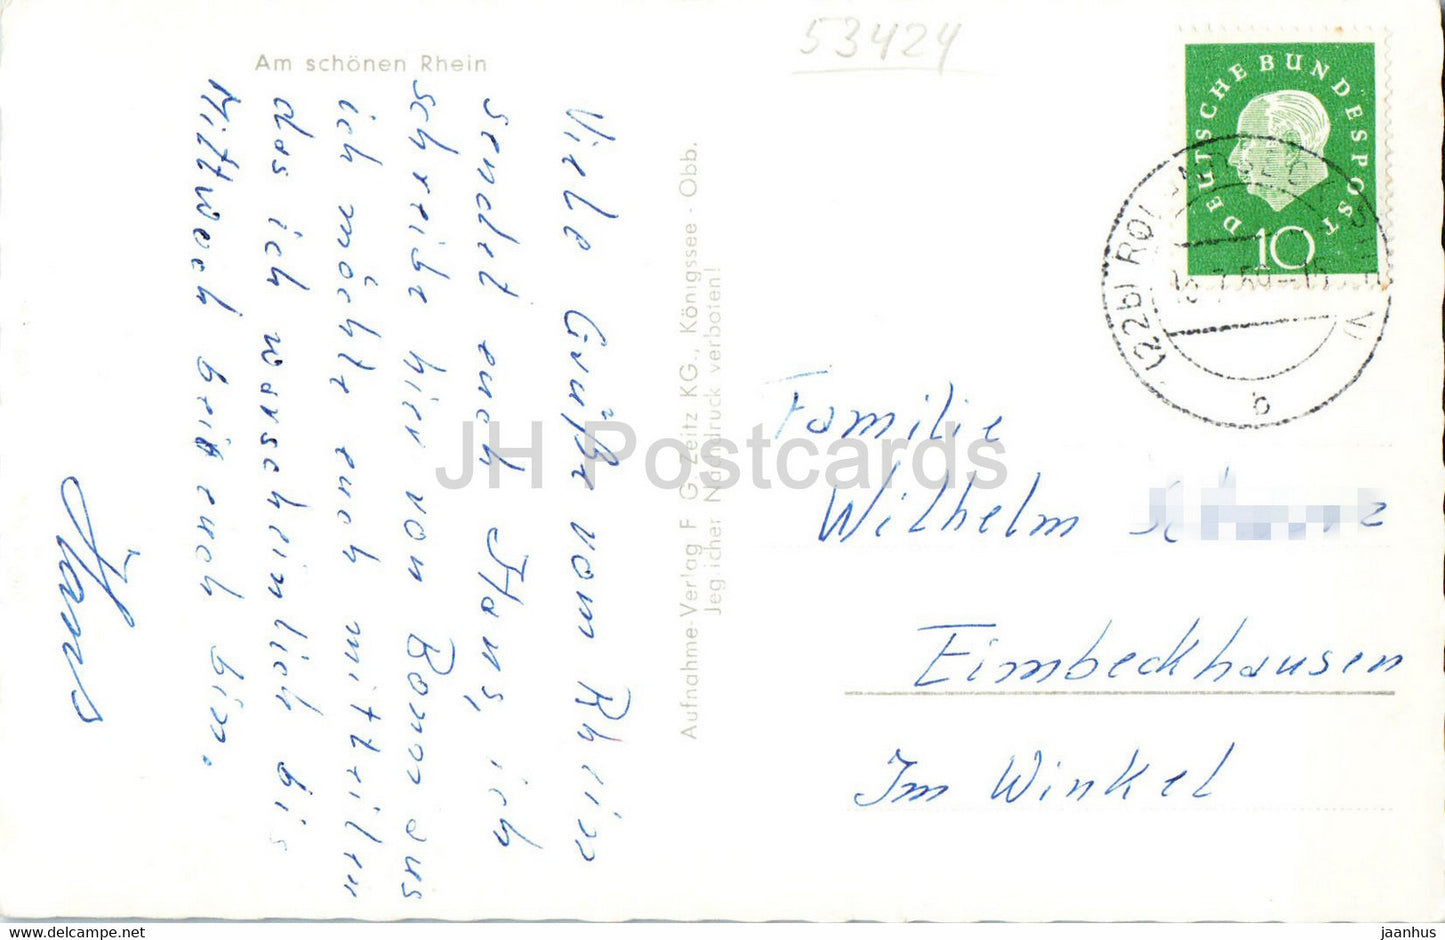 Das Siebengebirge - Königswinter - Petersberg - Drachenfels - Rolandsbogen - alte Postkarte - 1959 - Deutschland - gebraucht